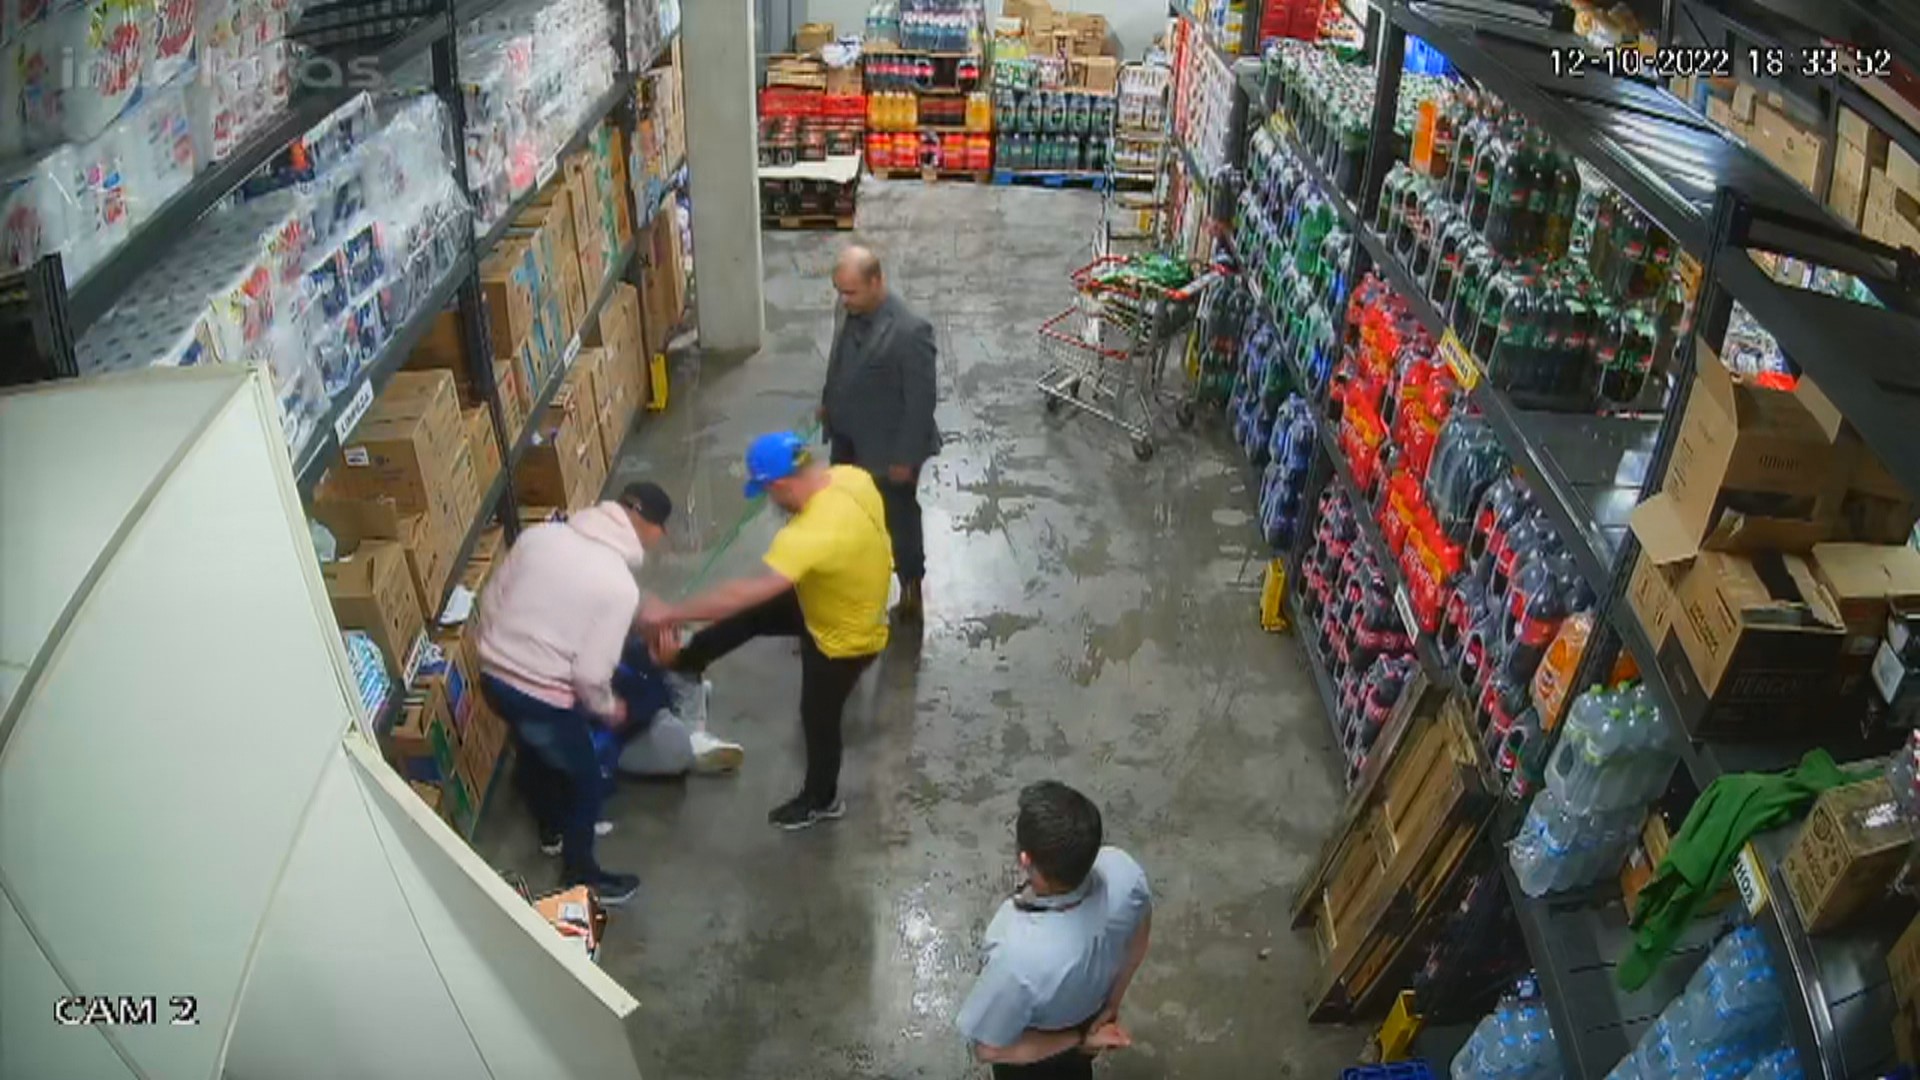 Polícia Civil investiga tortura contra dois homens suspeitos de furtar picanha em supermercado no RS